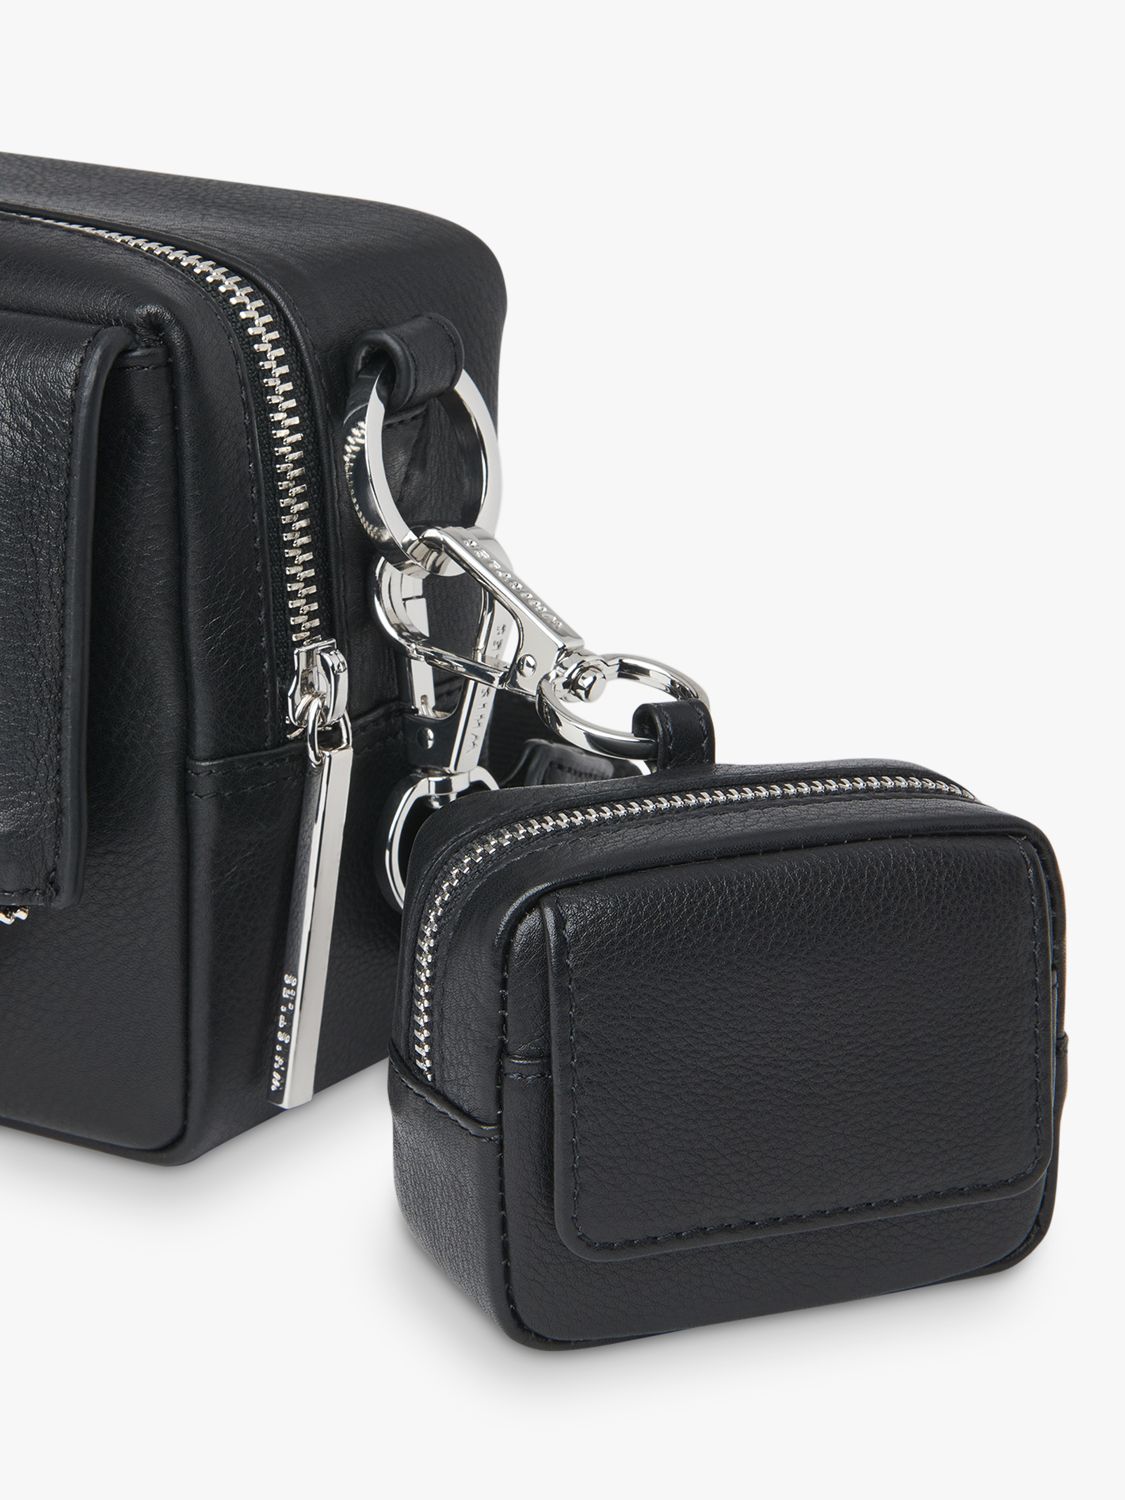 Whistles Bibi Mini Keyring Bag, Black, One Size